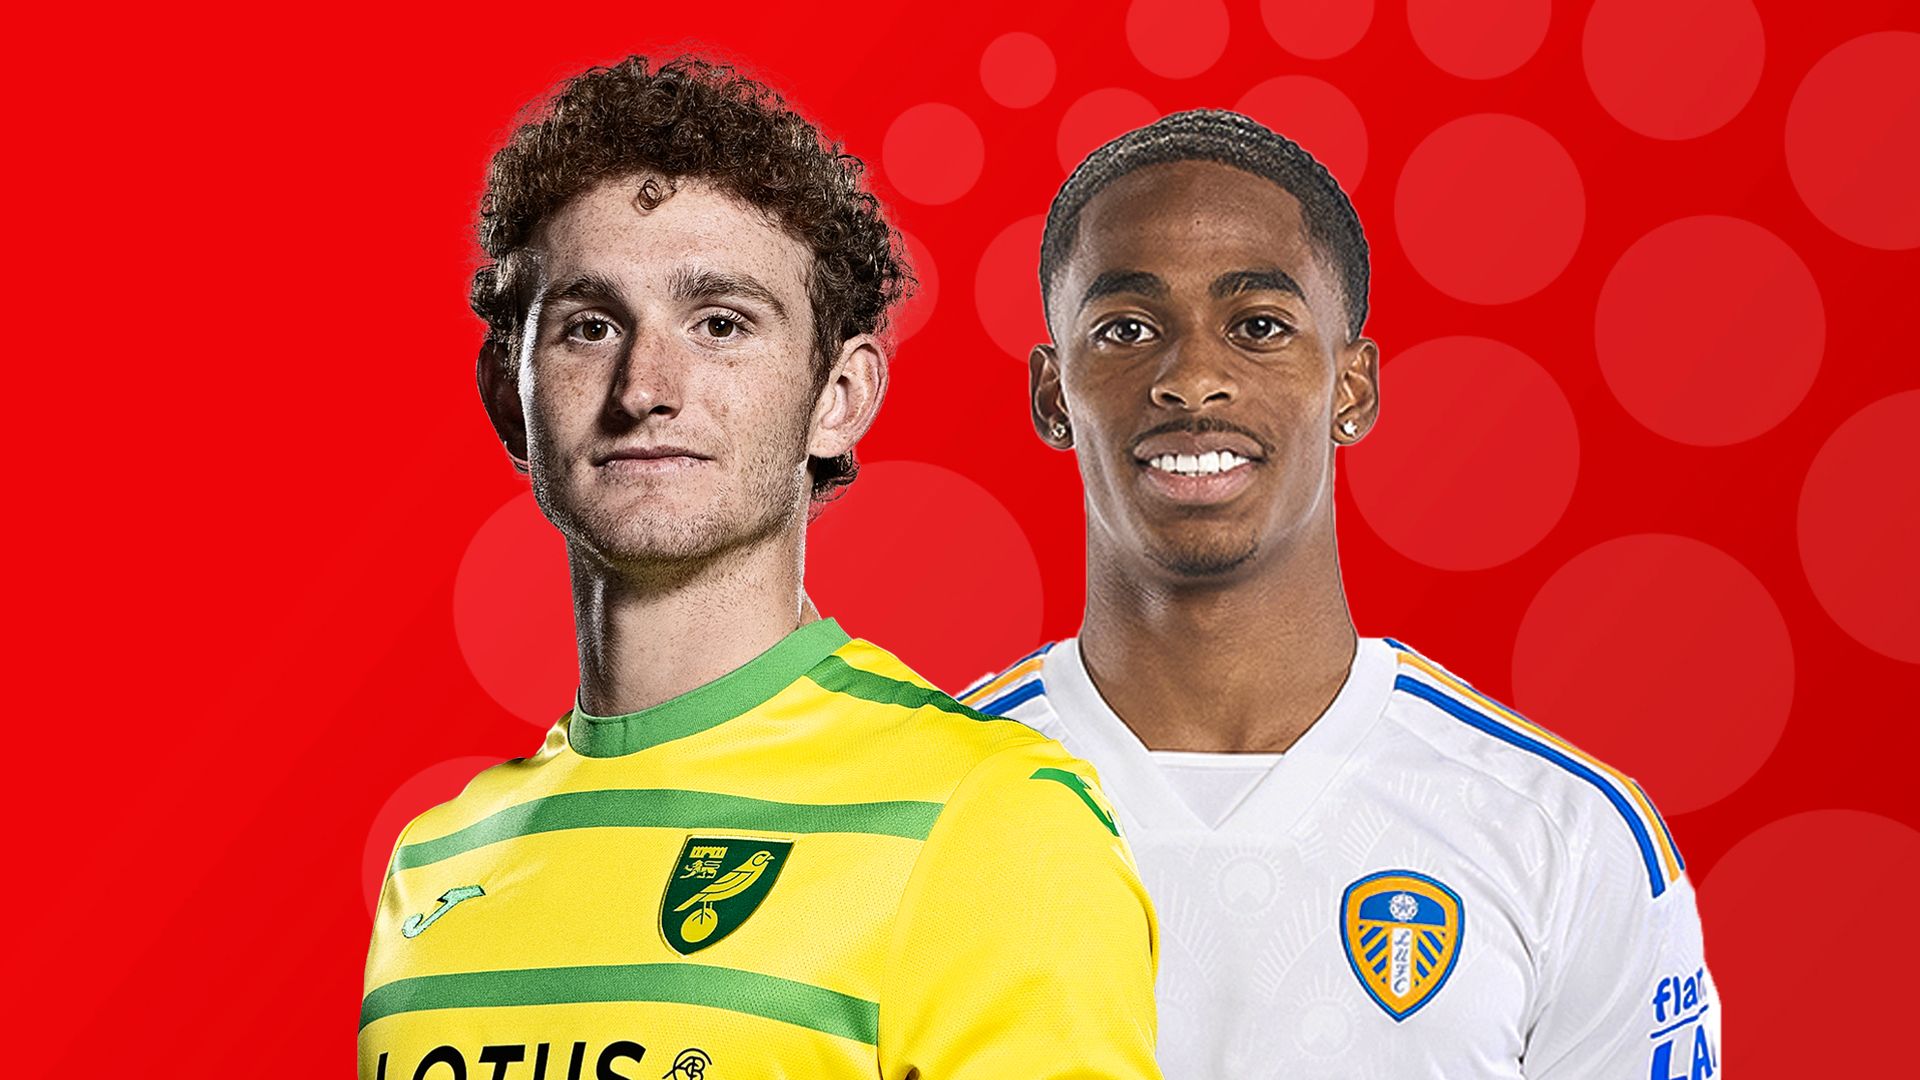 Live on Sky: Norwich vs Leeds